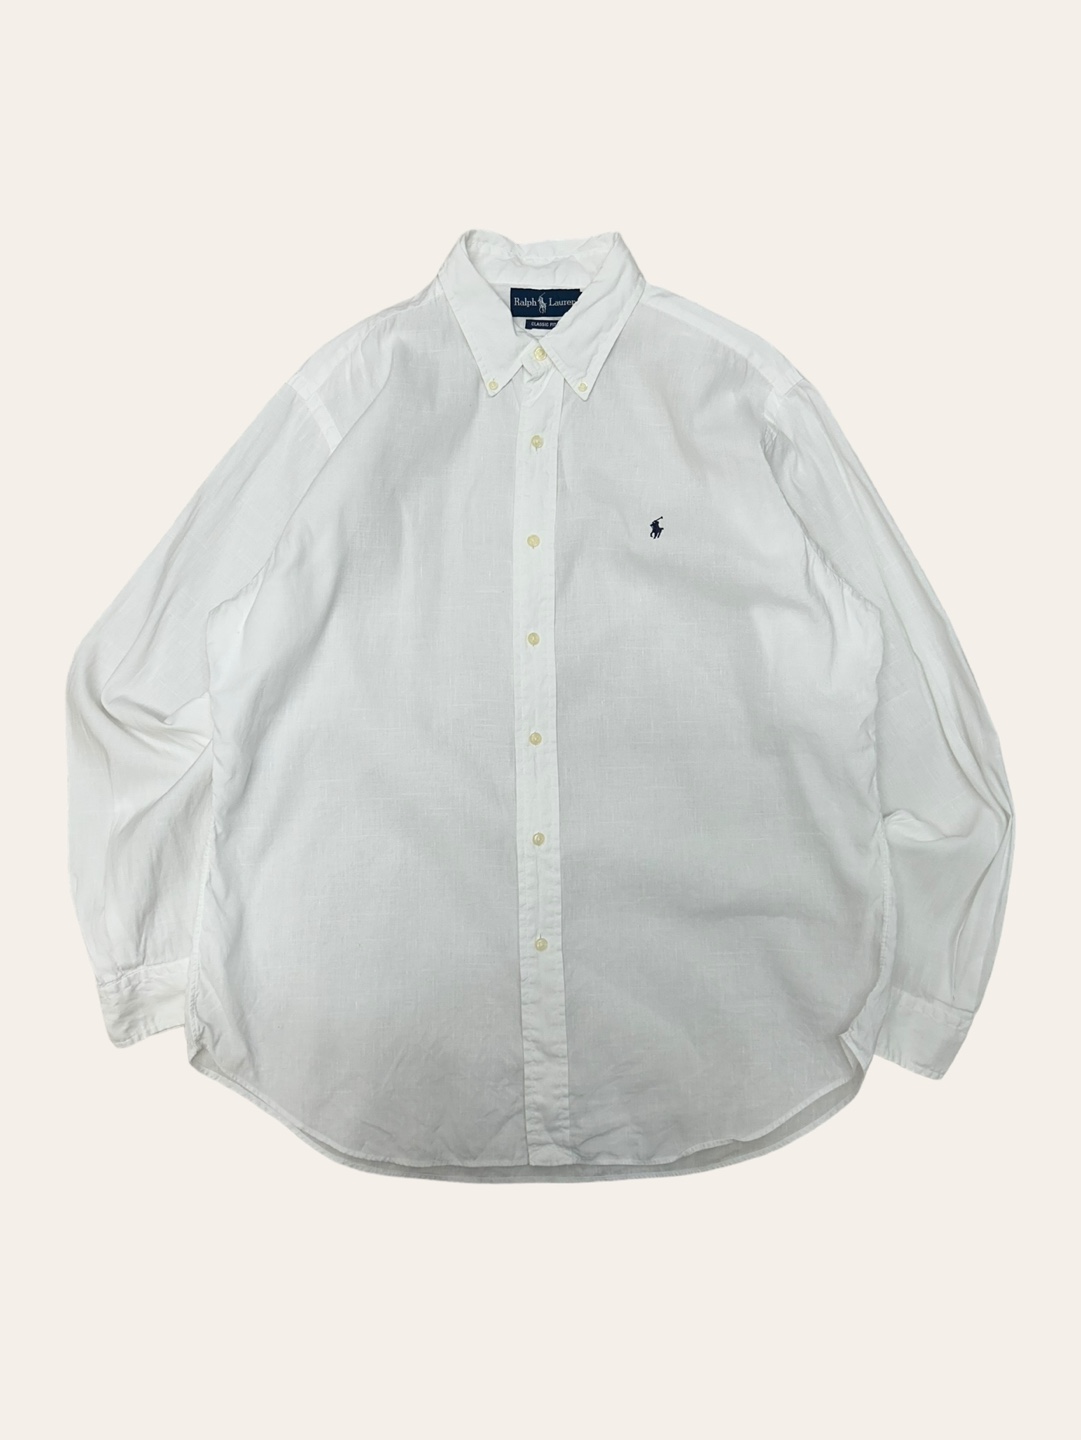 (From USA)Polo ralph lauren white linen/cotton shirt L